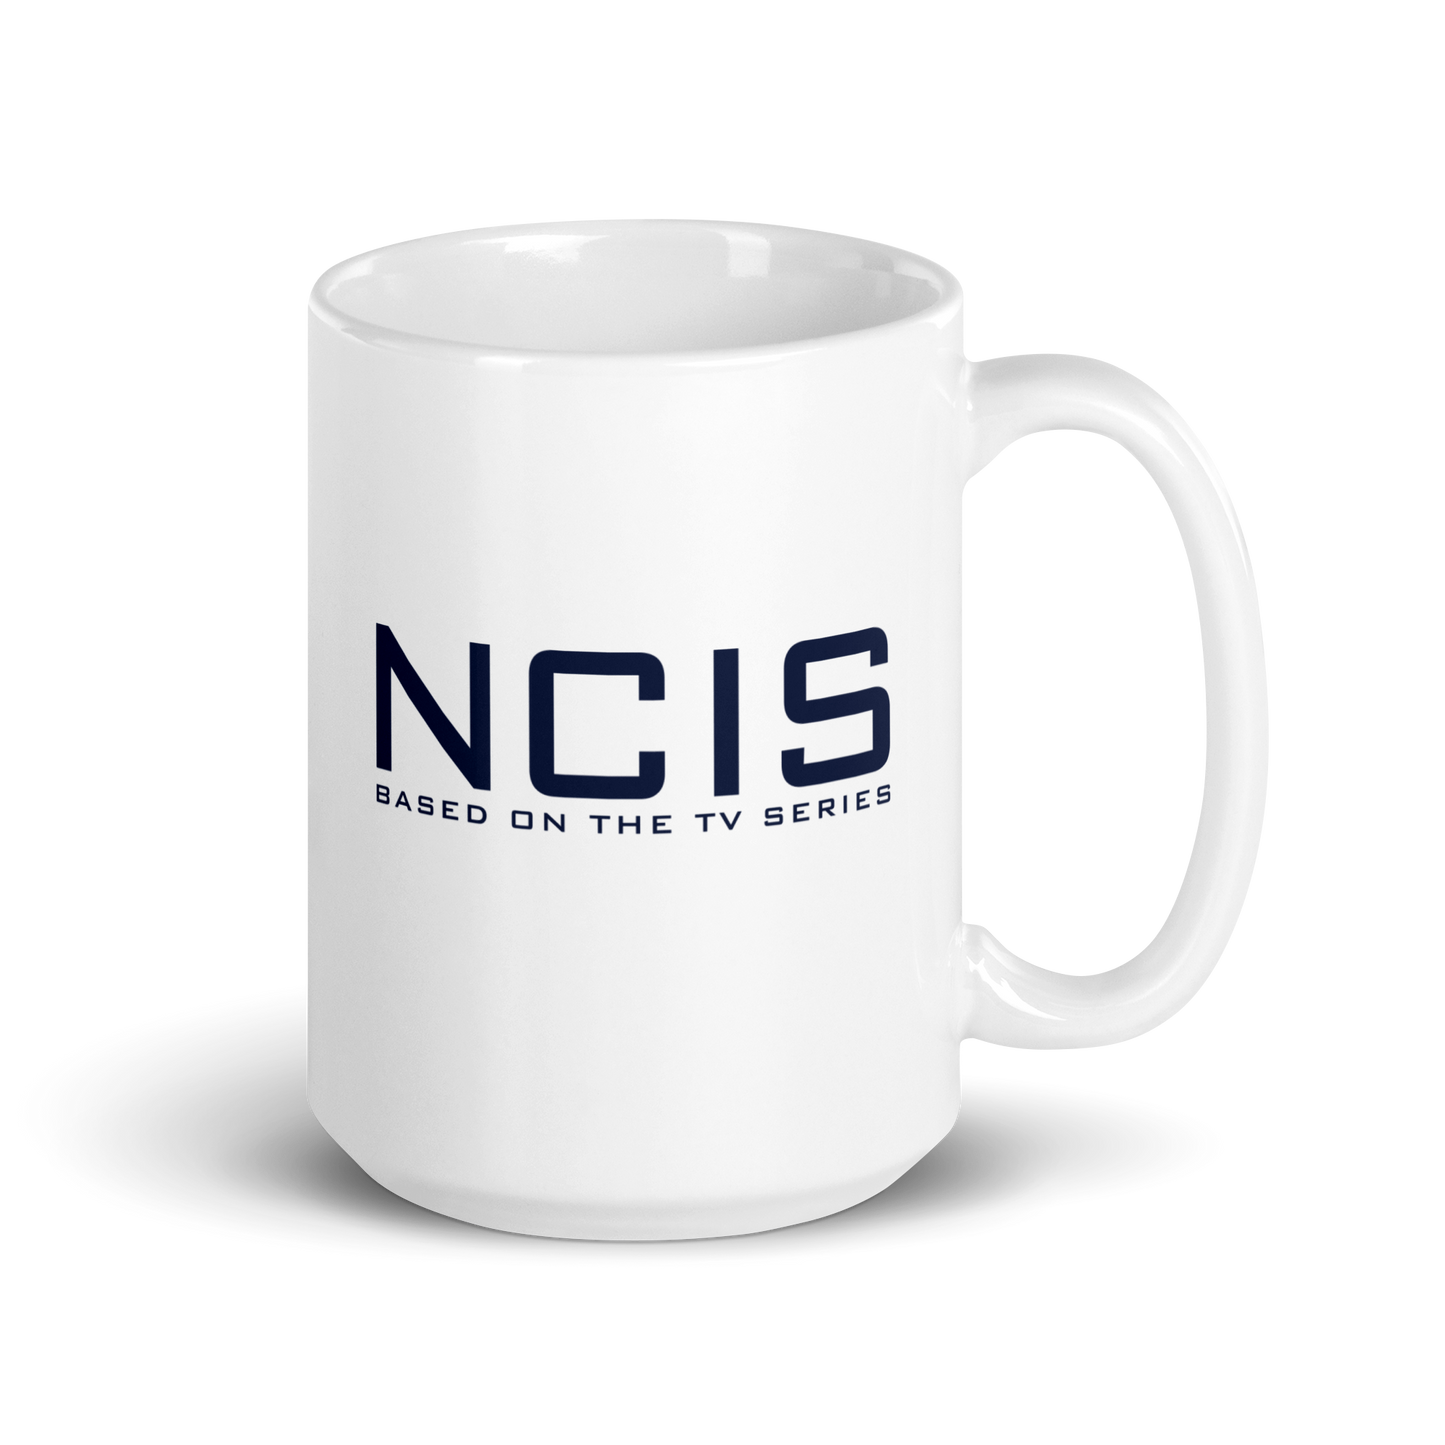 NCIS Gibbs-Regel 91 Tasse